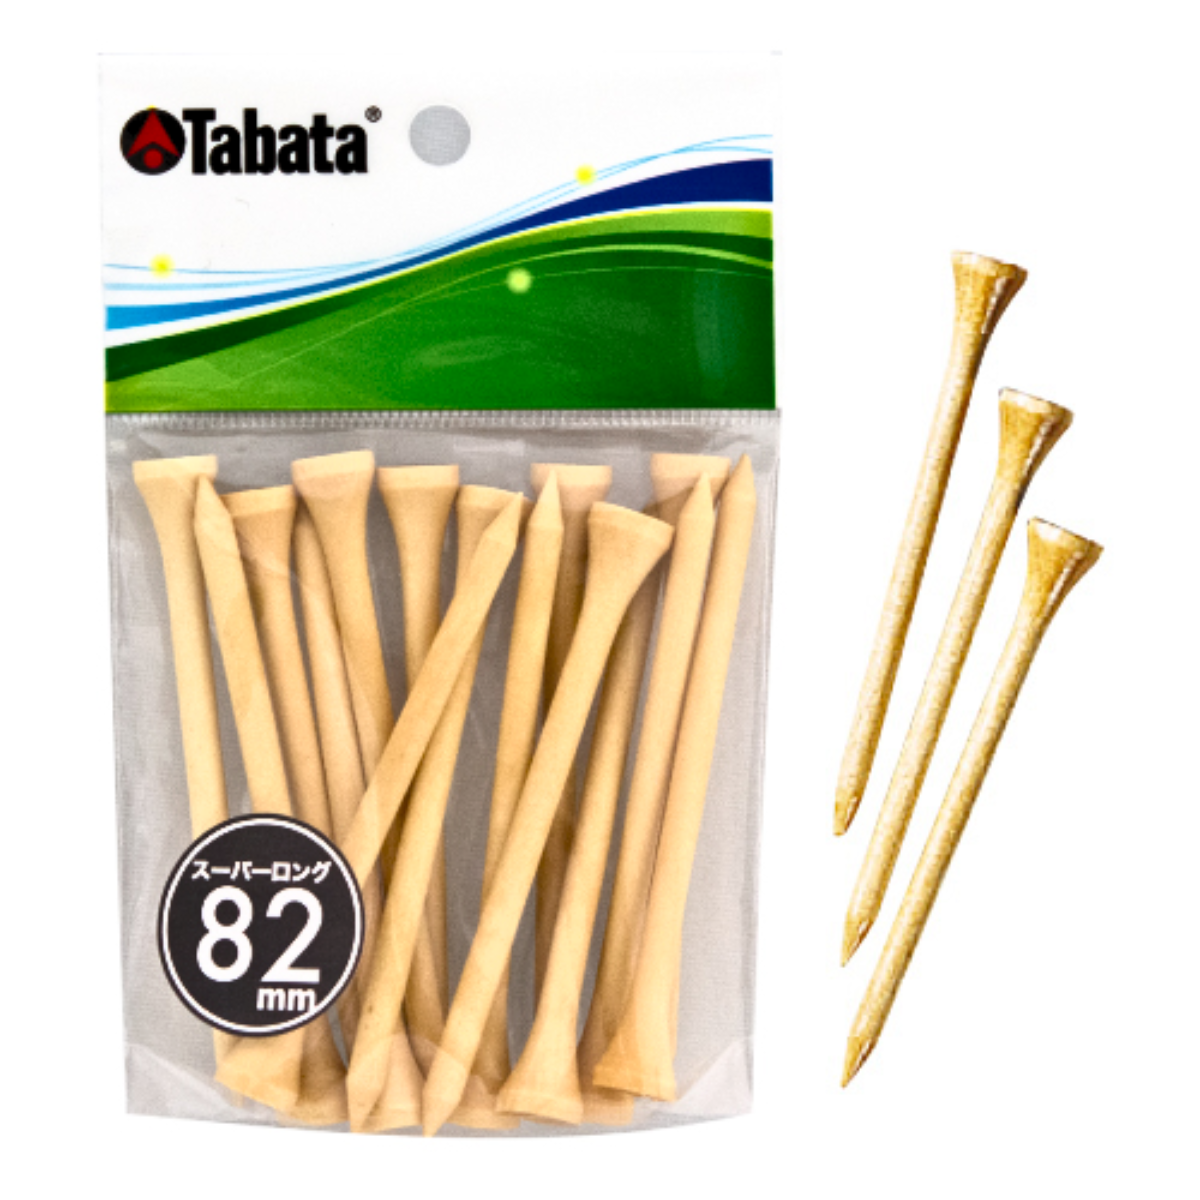 Tabata Wood Tee 82mm Super Long (Pack of 15 Pcs)